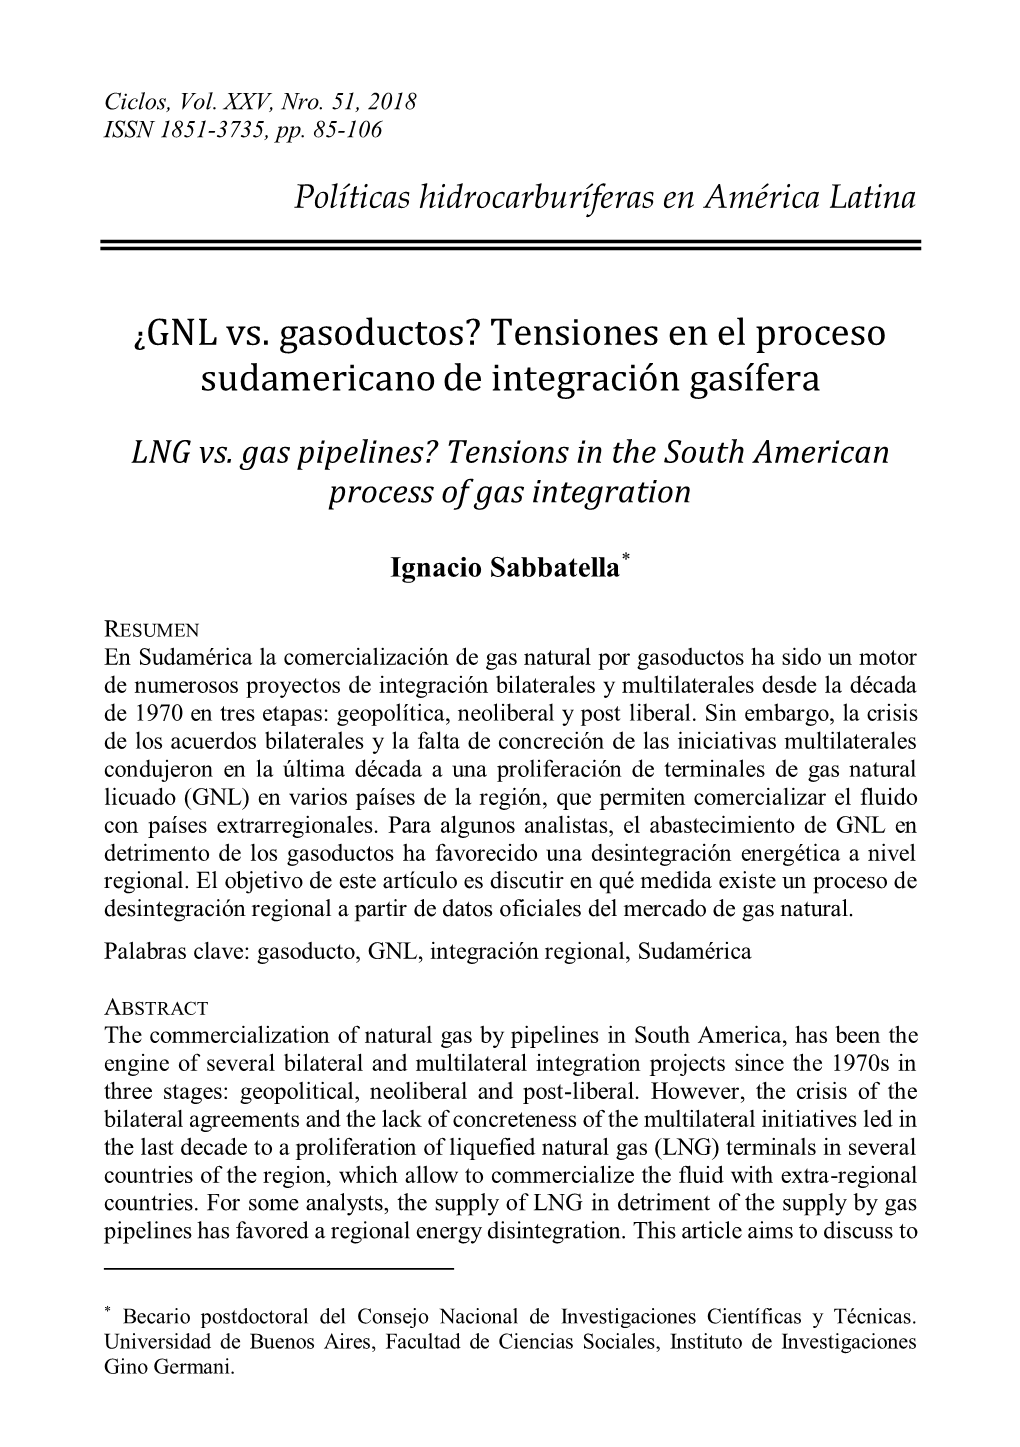 ¿GNL Vs. Gasoductos? Tensiones En El Proceso Sudamericano De Integración Gasífera